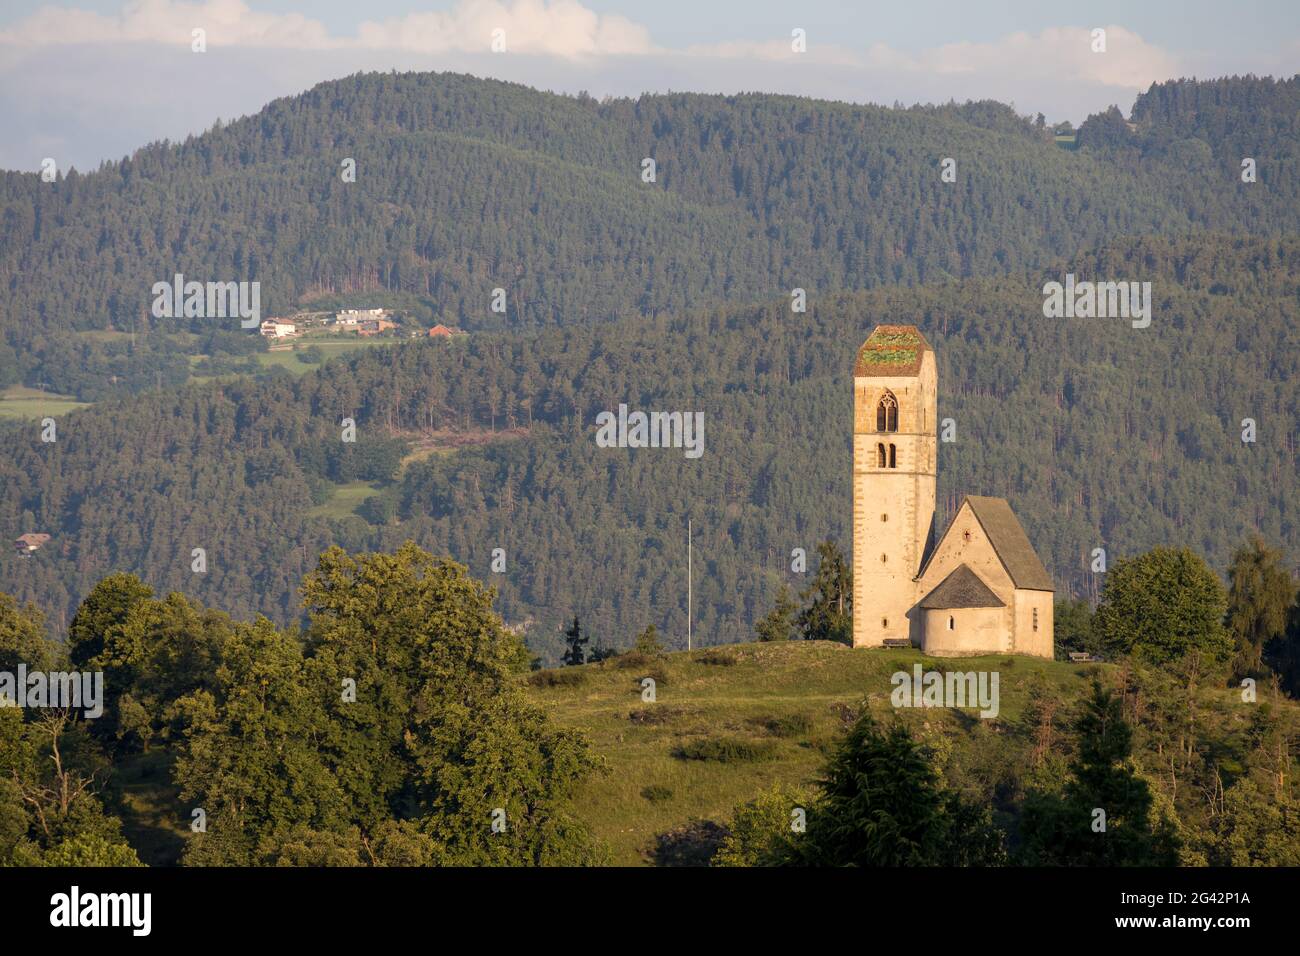 FIE ALLO AM SCHLERN, SÜDTIROL/ITALIEN - AUGUST 8 : Blick auf die Kirche San Pietro in Colle, Fie allo am Schlern Trentino Alto Adigio, Sout Stockfoto